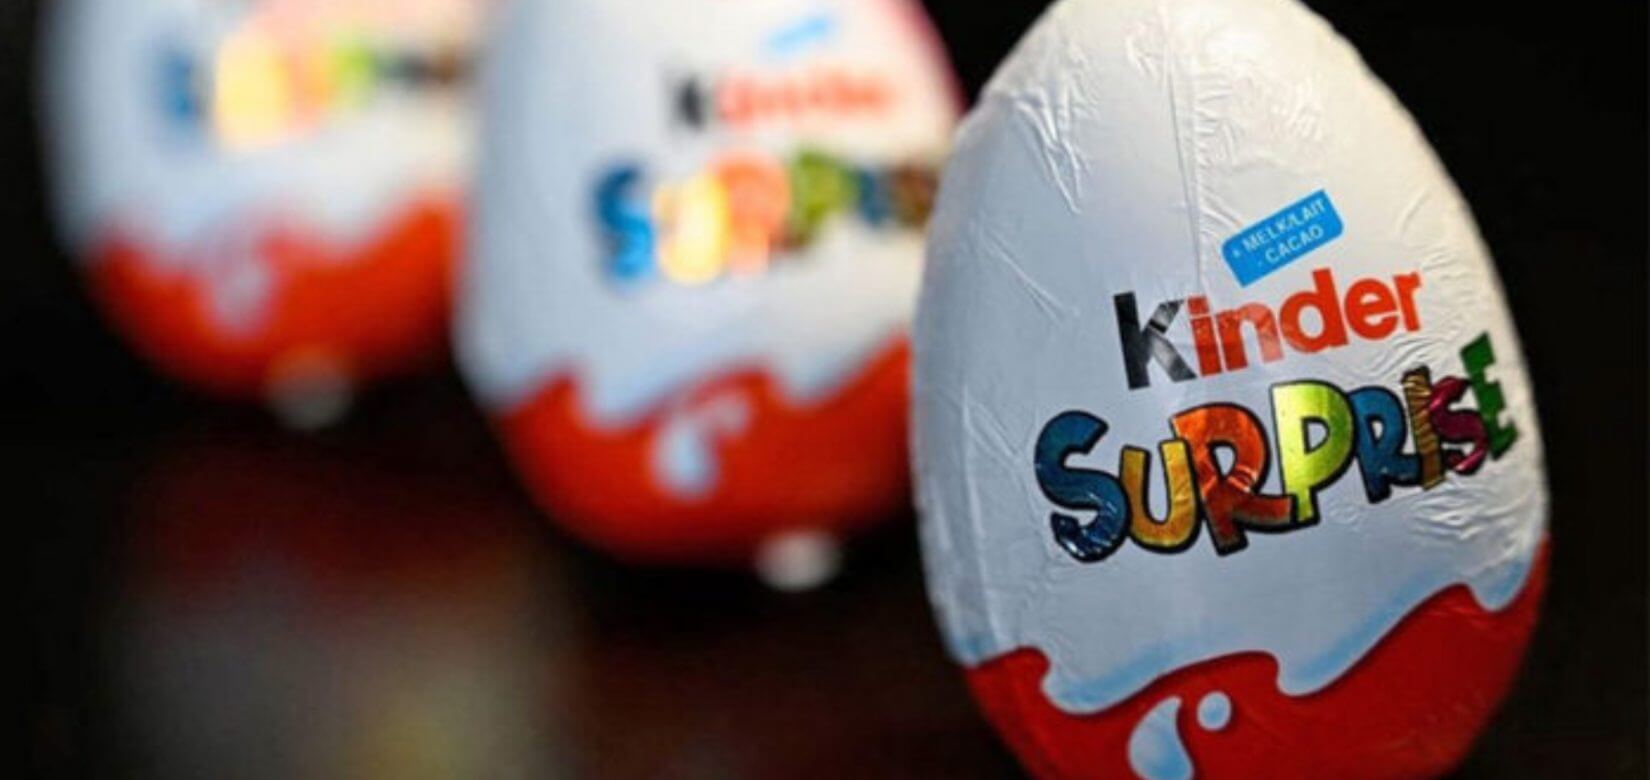 Kinder: Πάσχα χωρίς τα γνωστά σοκολατένια αυγά - Ανακαλούνται από την ελληνική αγορά!